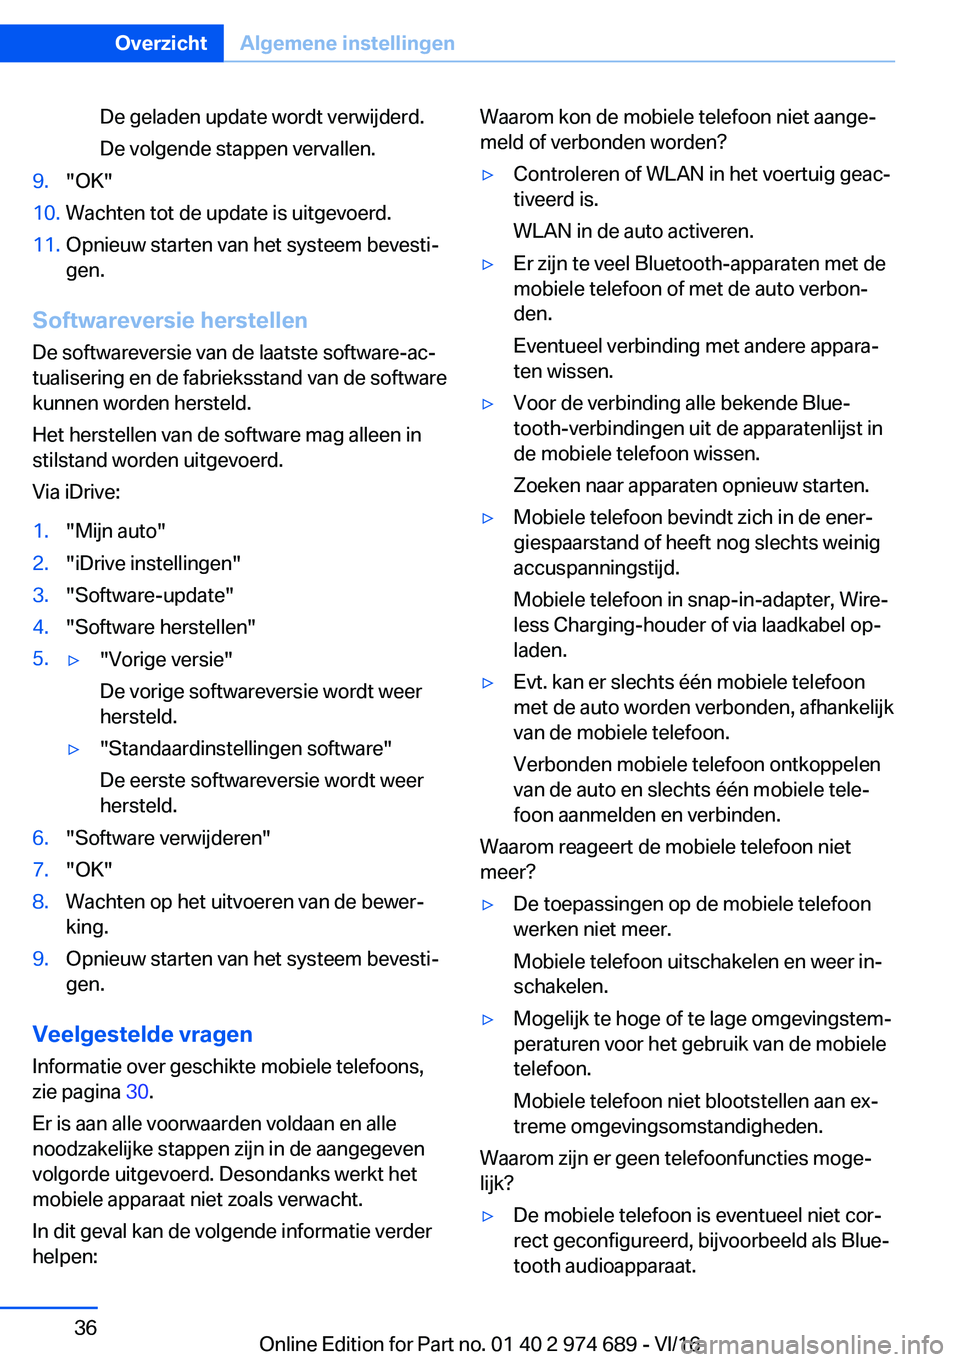 BMW M2 2017  Instructieboekjes (in Dutch) �D�e� �g�e�l�a�d�e�n� �u�p�d�a�t�e� �w�o�r�d�t� �v�e�r�w�i�j�d�e�r�d�.
�D�e� �v�o�l�g�e�n�d�e� �s�t�a�p�p�e�n� �v�e�r�v�a�l�l�e�n�.�9�.�"�O�K�"�1�0�.�W�a�c�h�t�e�n� �t�o�t� �d�e� �u�p�d�a�t�e�